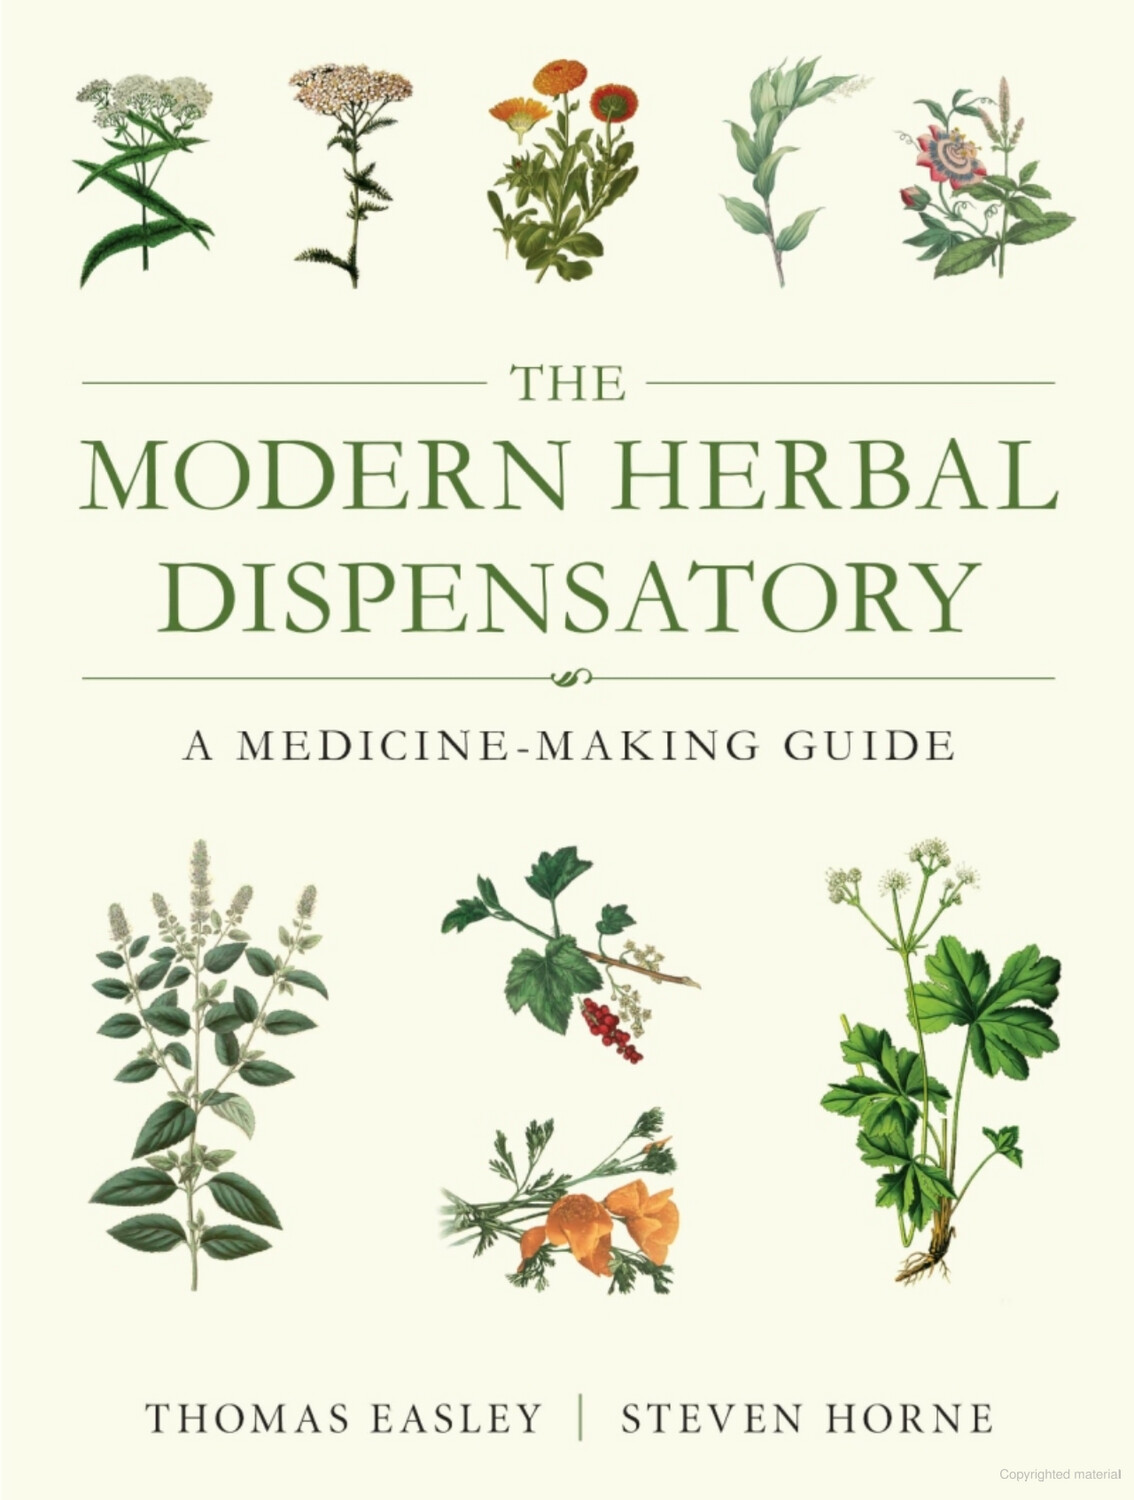 The Modern Herbal Dispensary by Thomas Easley & Steven Horne